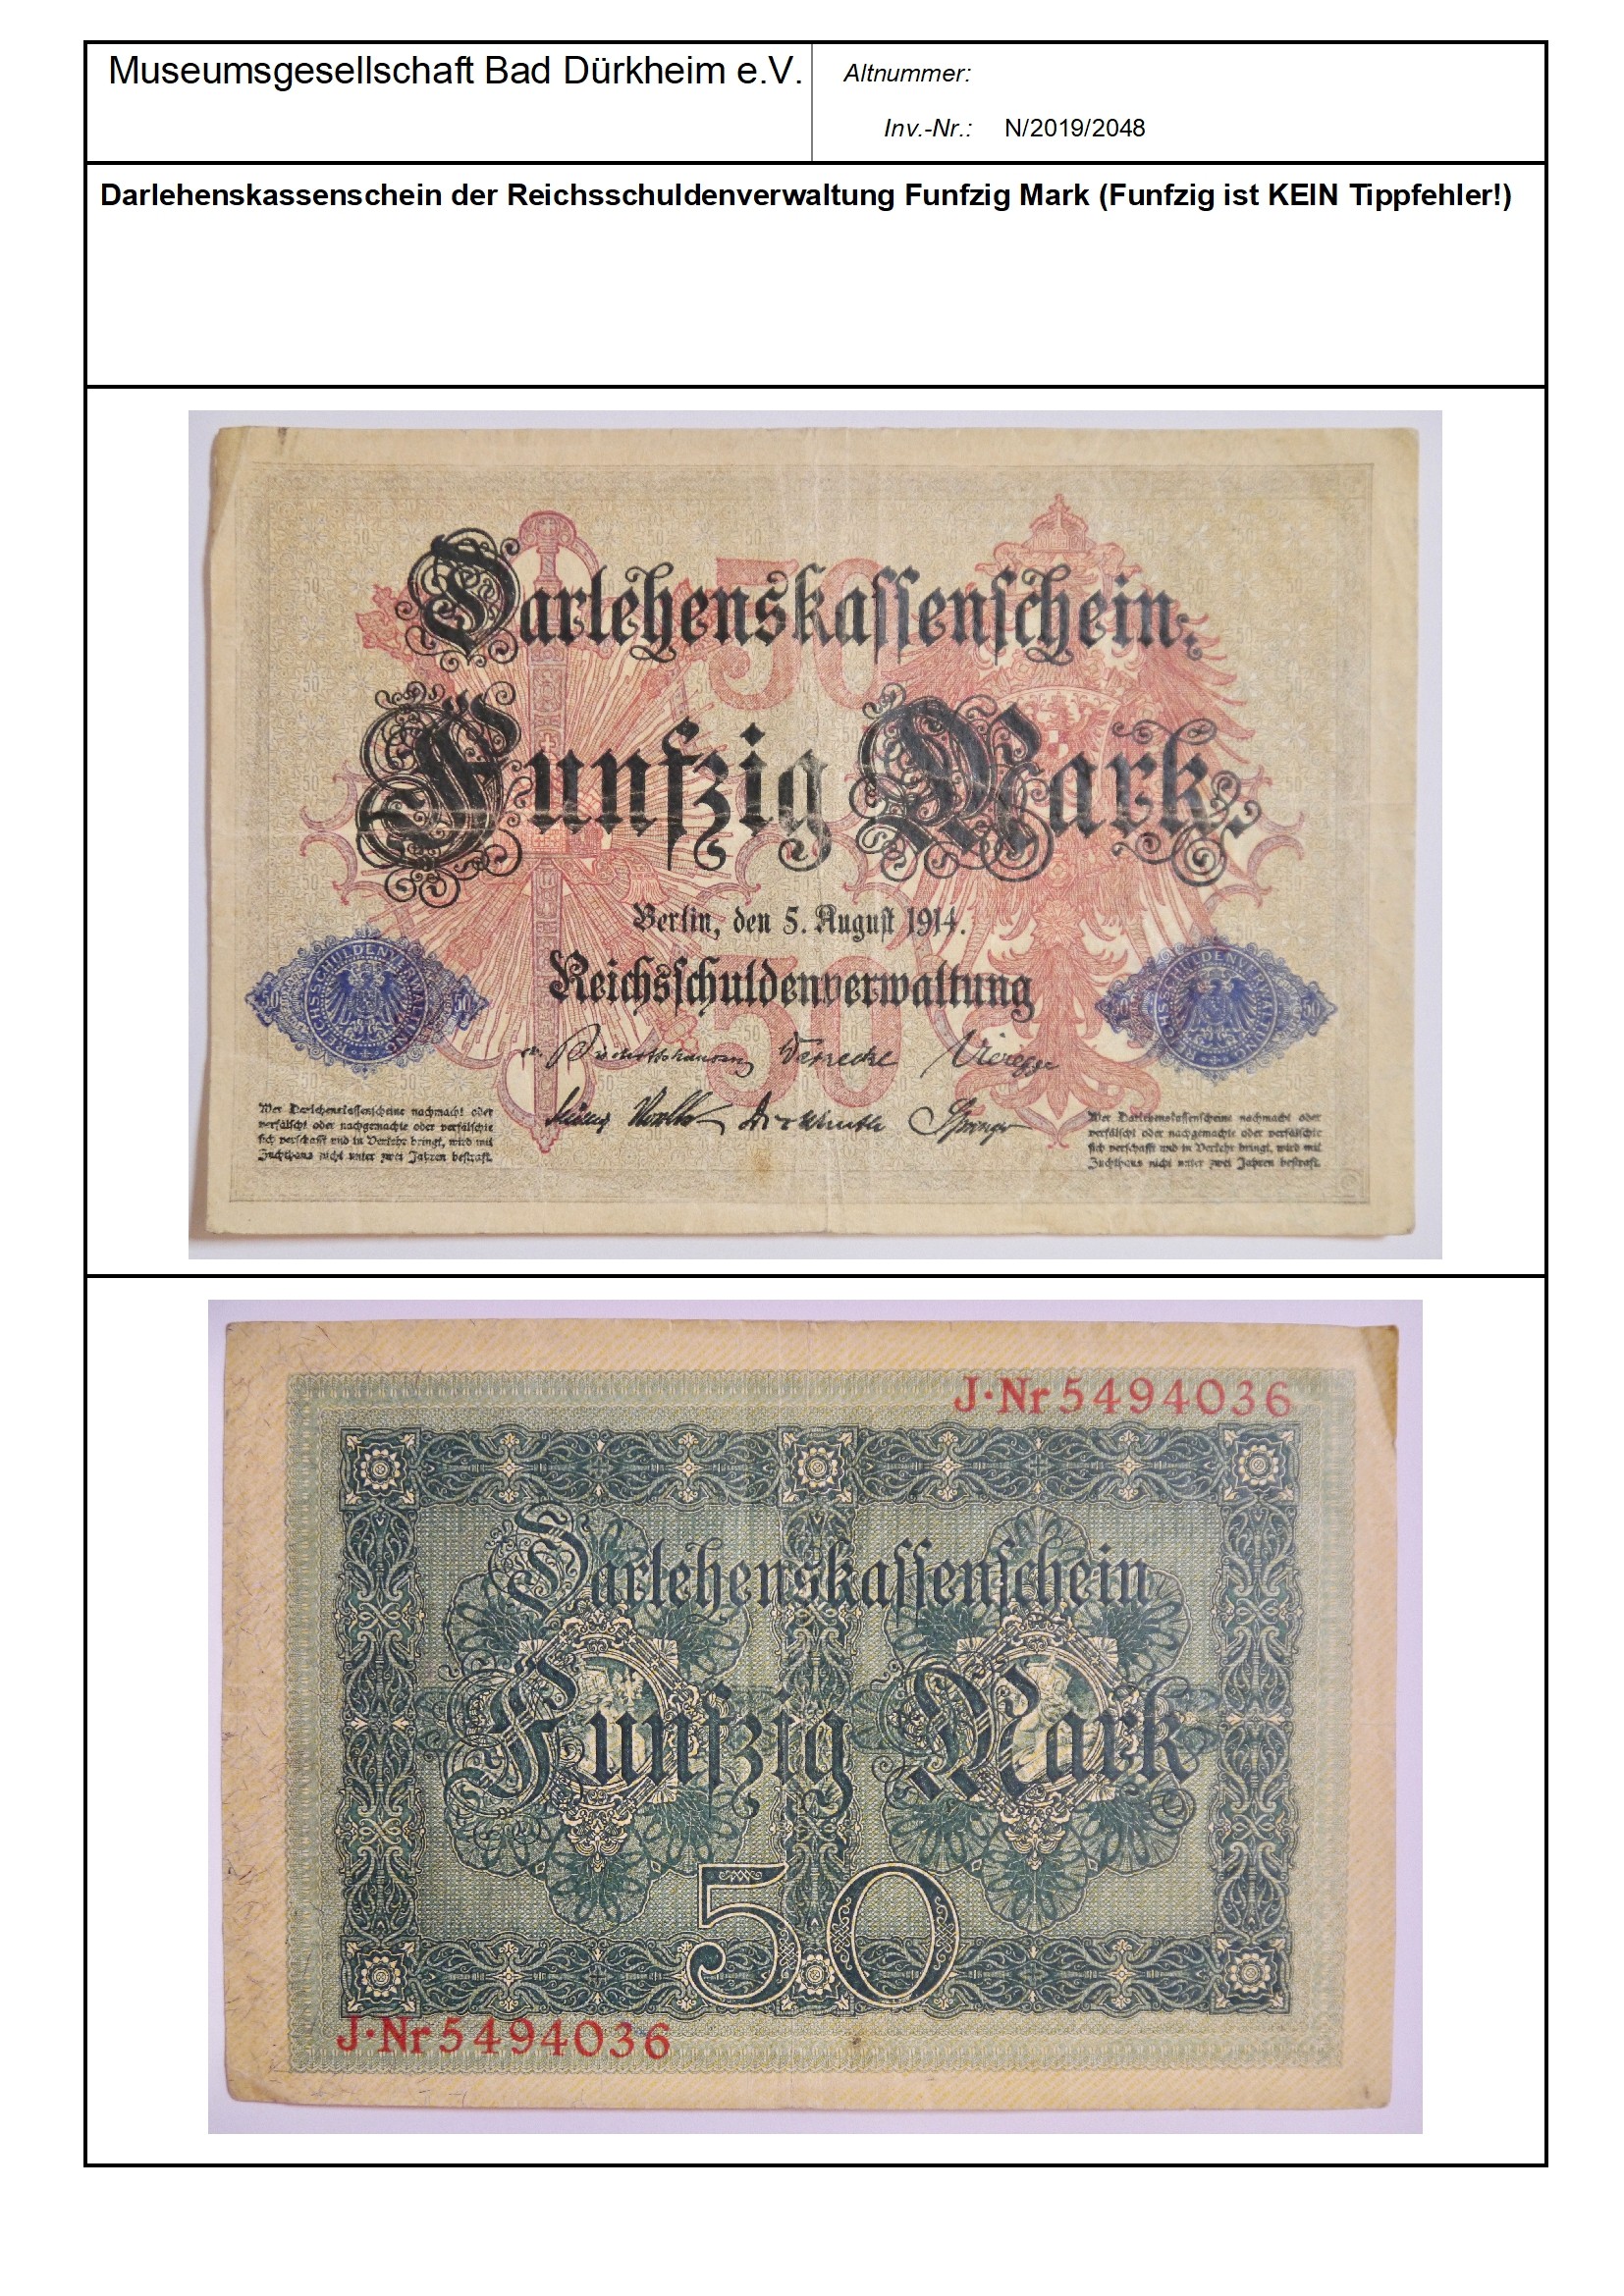 Darlehenskassenschein der Reichsschuldenverwaltung Funfzig Mark (Funfzig ist KEIN Tippfehler!)
Serien-Nummer: J*Nr 5494036 (Museumsgesellschaft Bad Dürkheim e.V. CC BY-NC-SA)